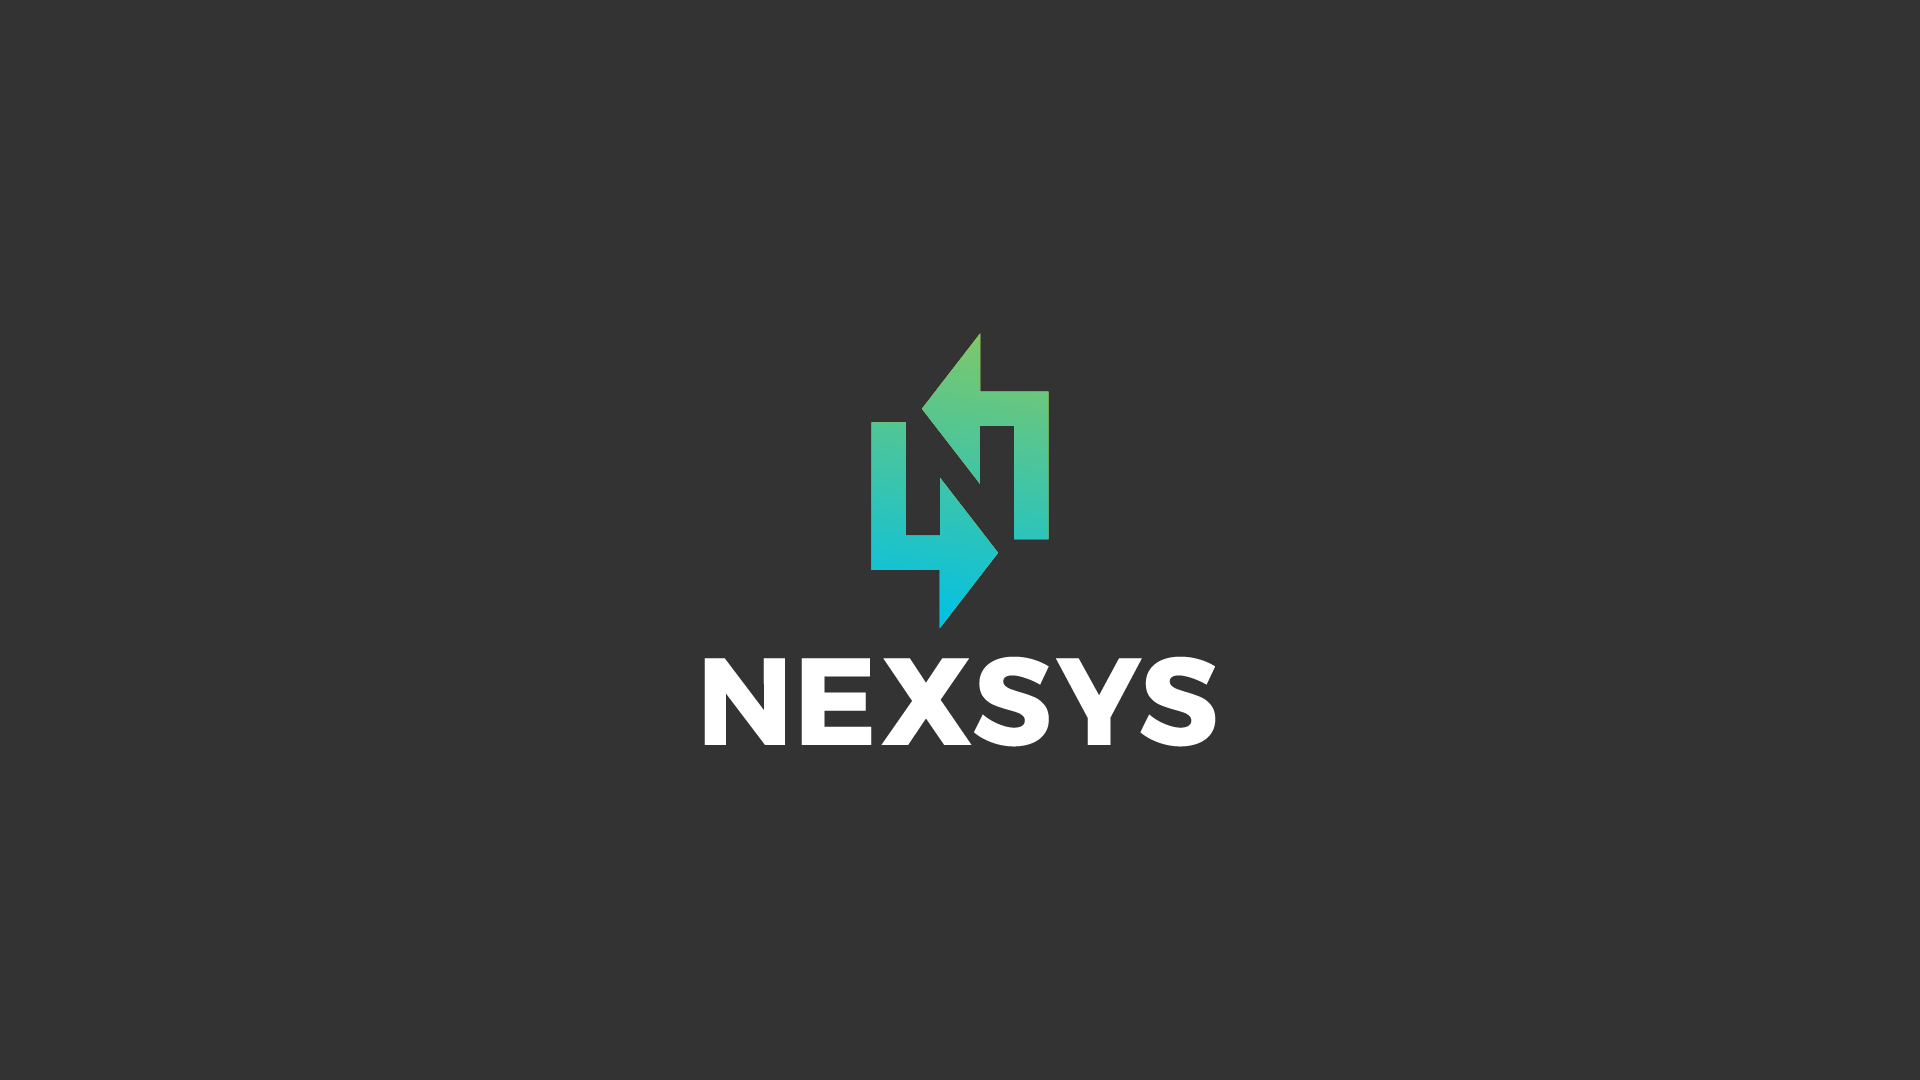 NexSys Next Generation Energy Systems